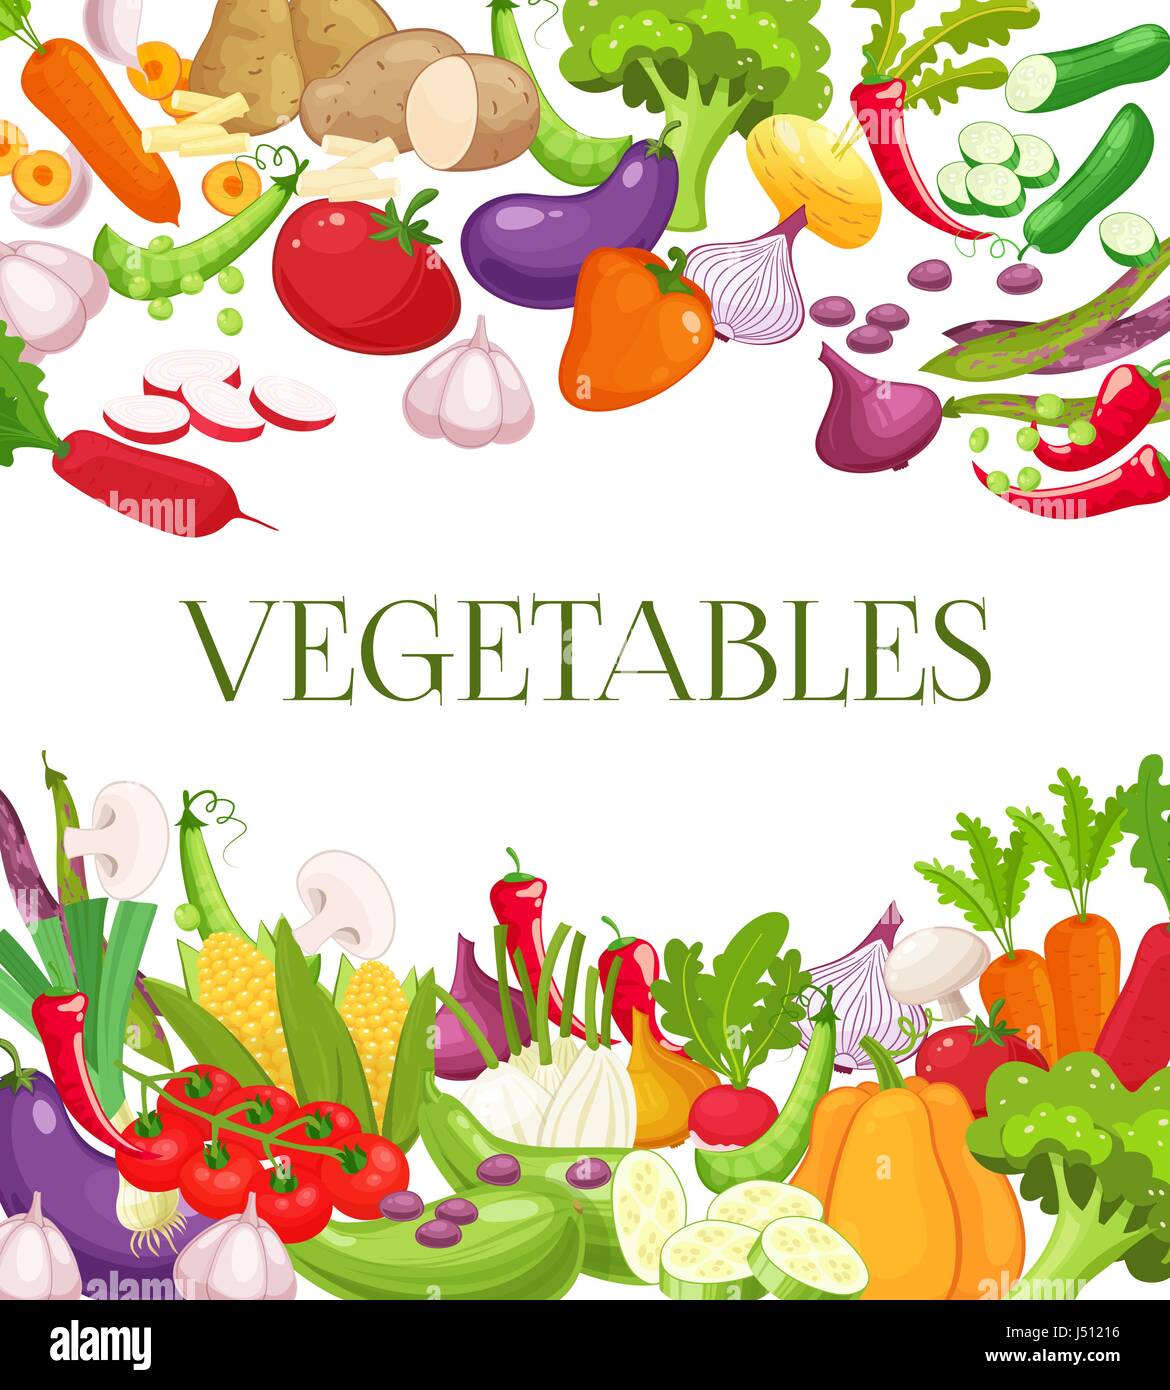 Gemüse und gesunde Ernährung Menü Poster. Frische Karotten, Tomaten, Paprika, Zwiebel, Brokkoli, Kohl, Knoblauch, Gurke, Blumenkohl, Kohlrabi und Rettich. Vegetarisches Essen, Bio Shop-design Stock Vektor